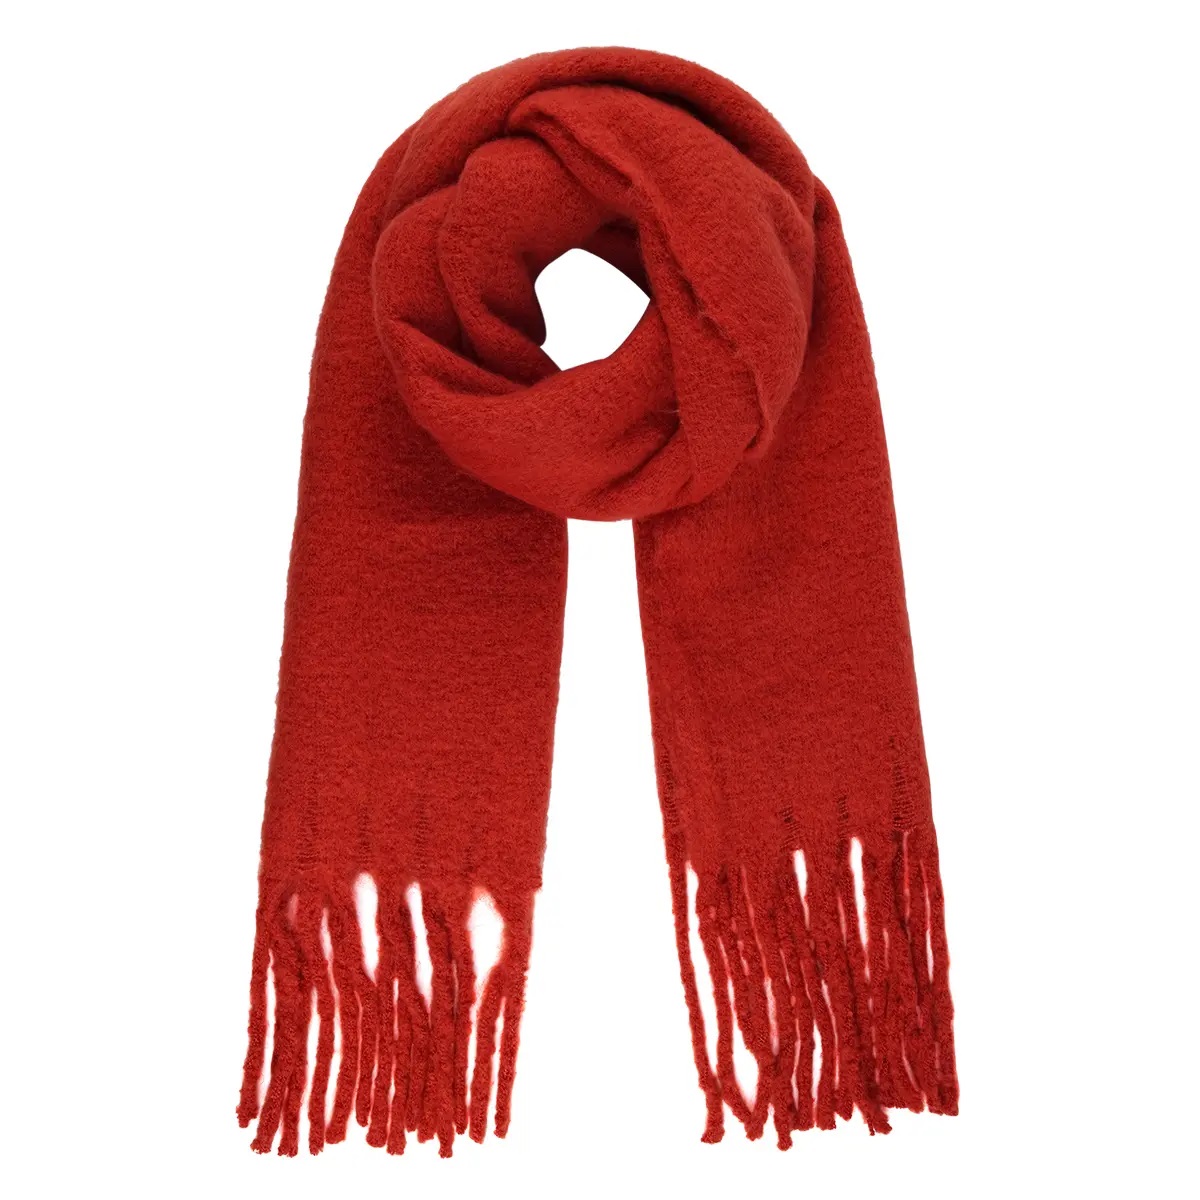 Dressoir Injectie huwelijk Warme dames sjaal Solid Colors oranje rood - Scarfz - De grootste collectie  sjaals online!